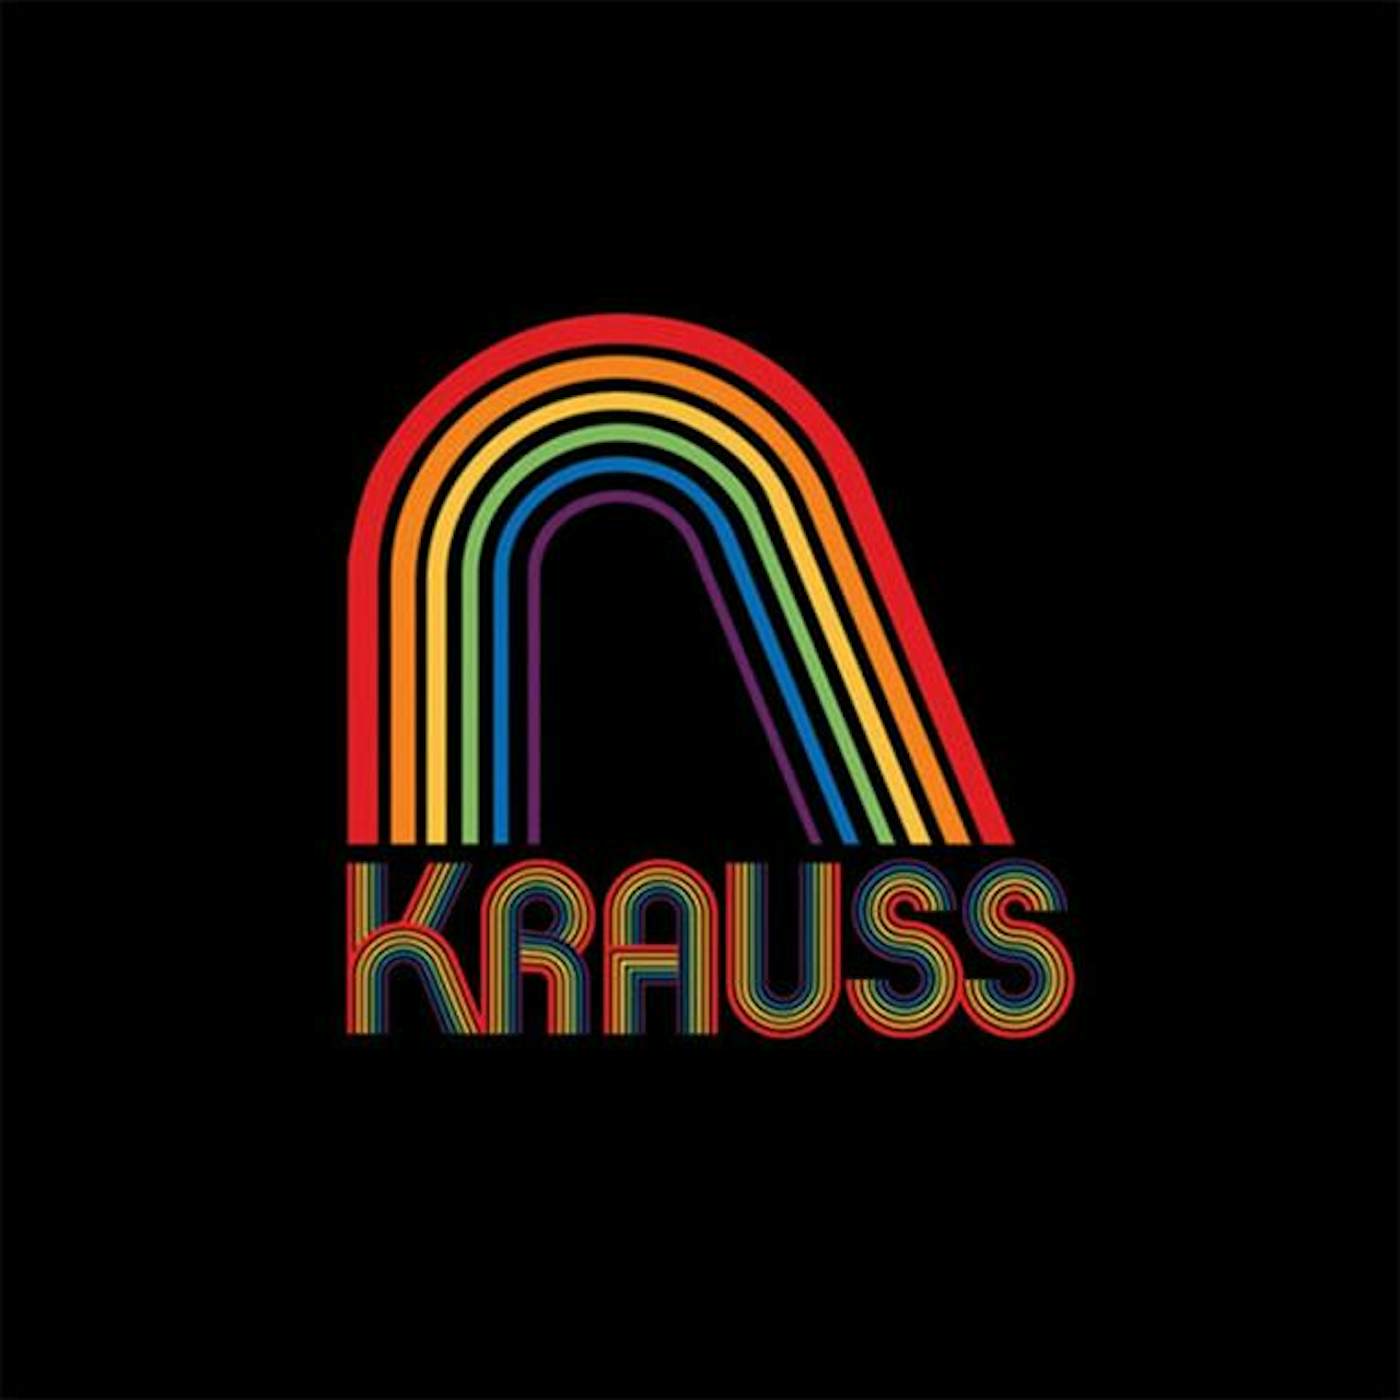 Krauss